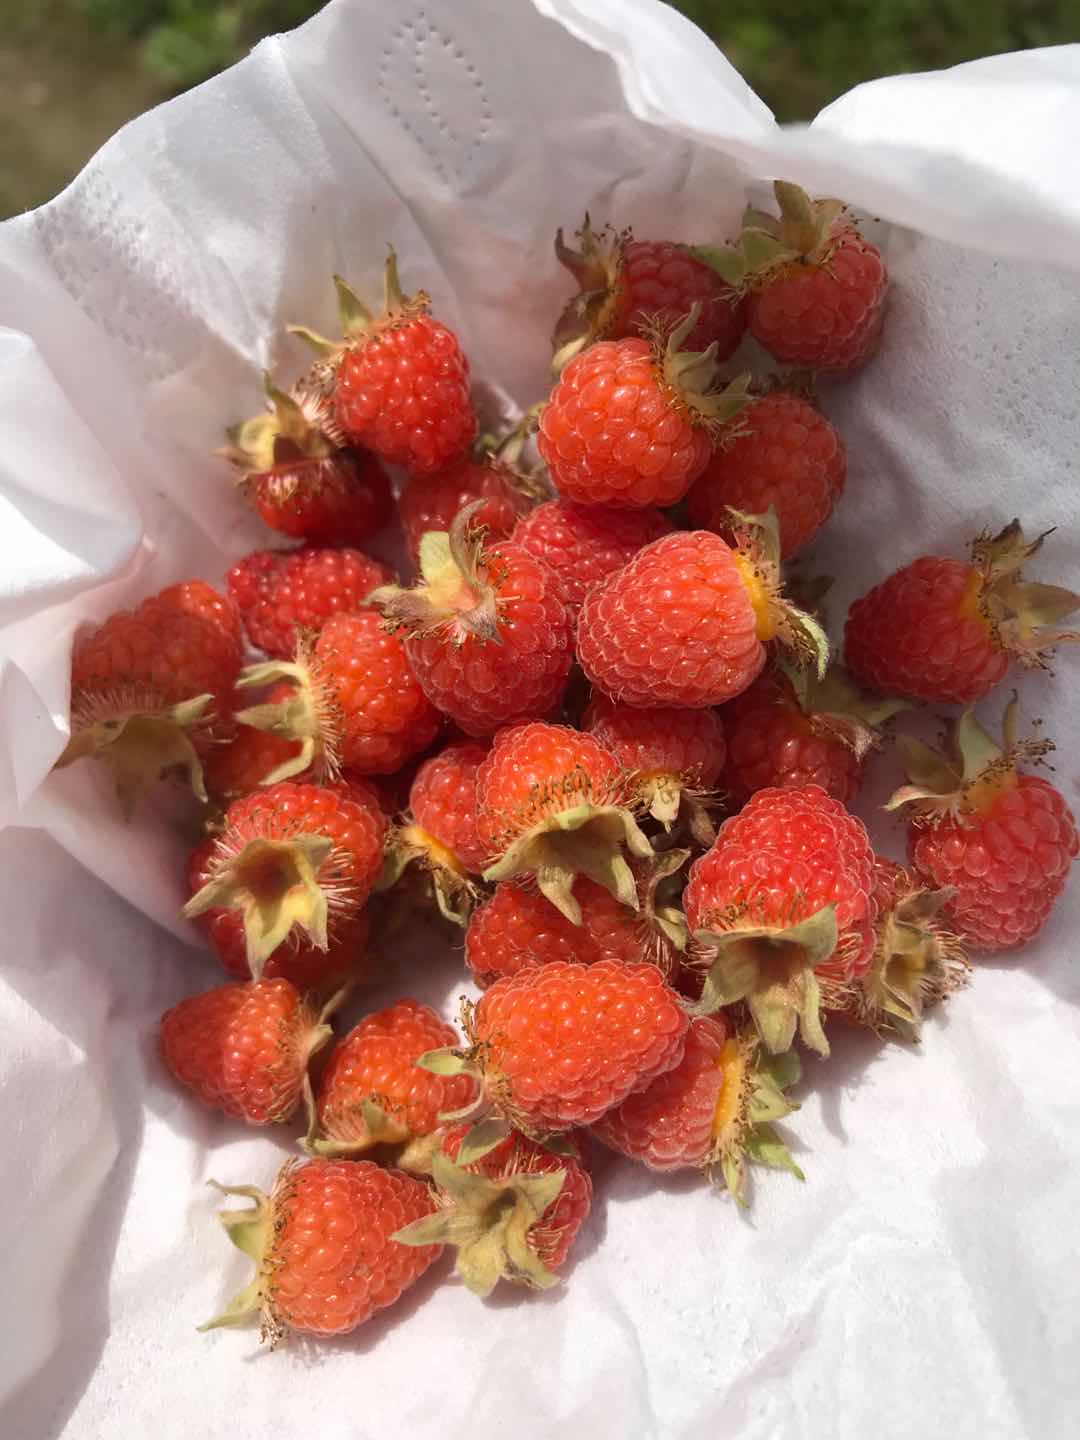 这种长得像树莓,但是只有乡下才有的野果,你知道叫什么吗?